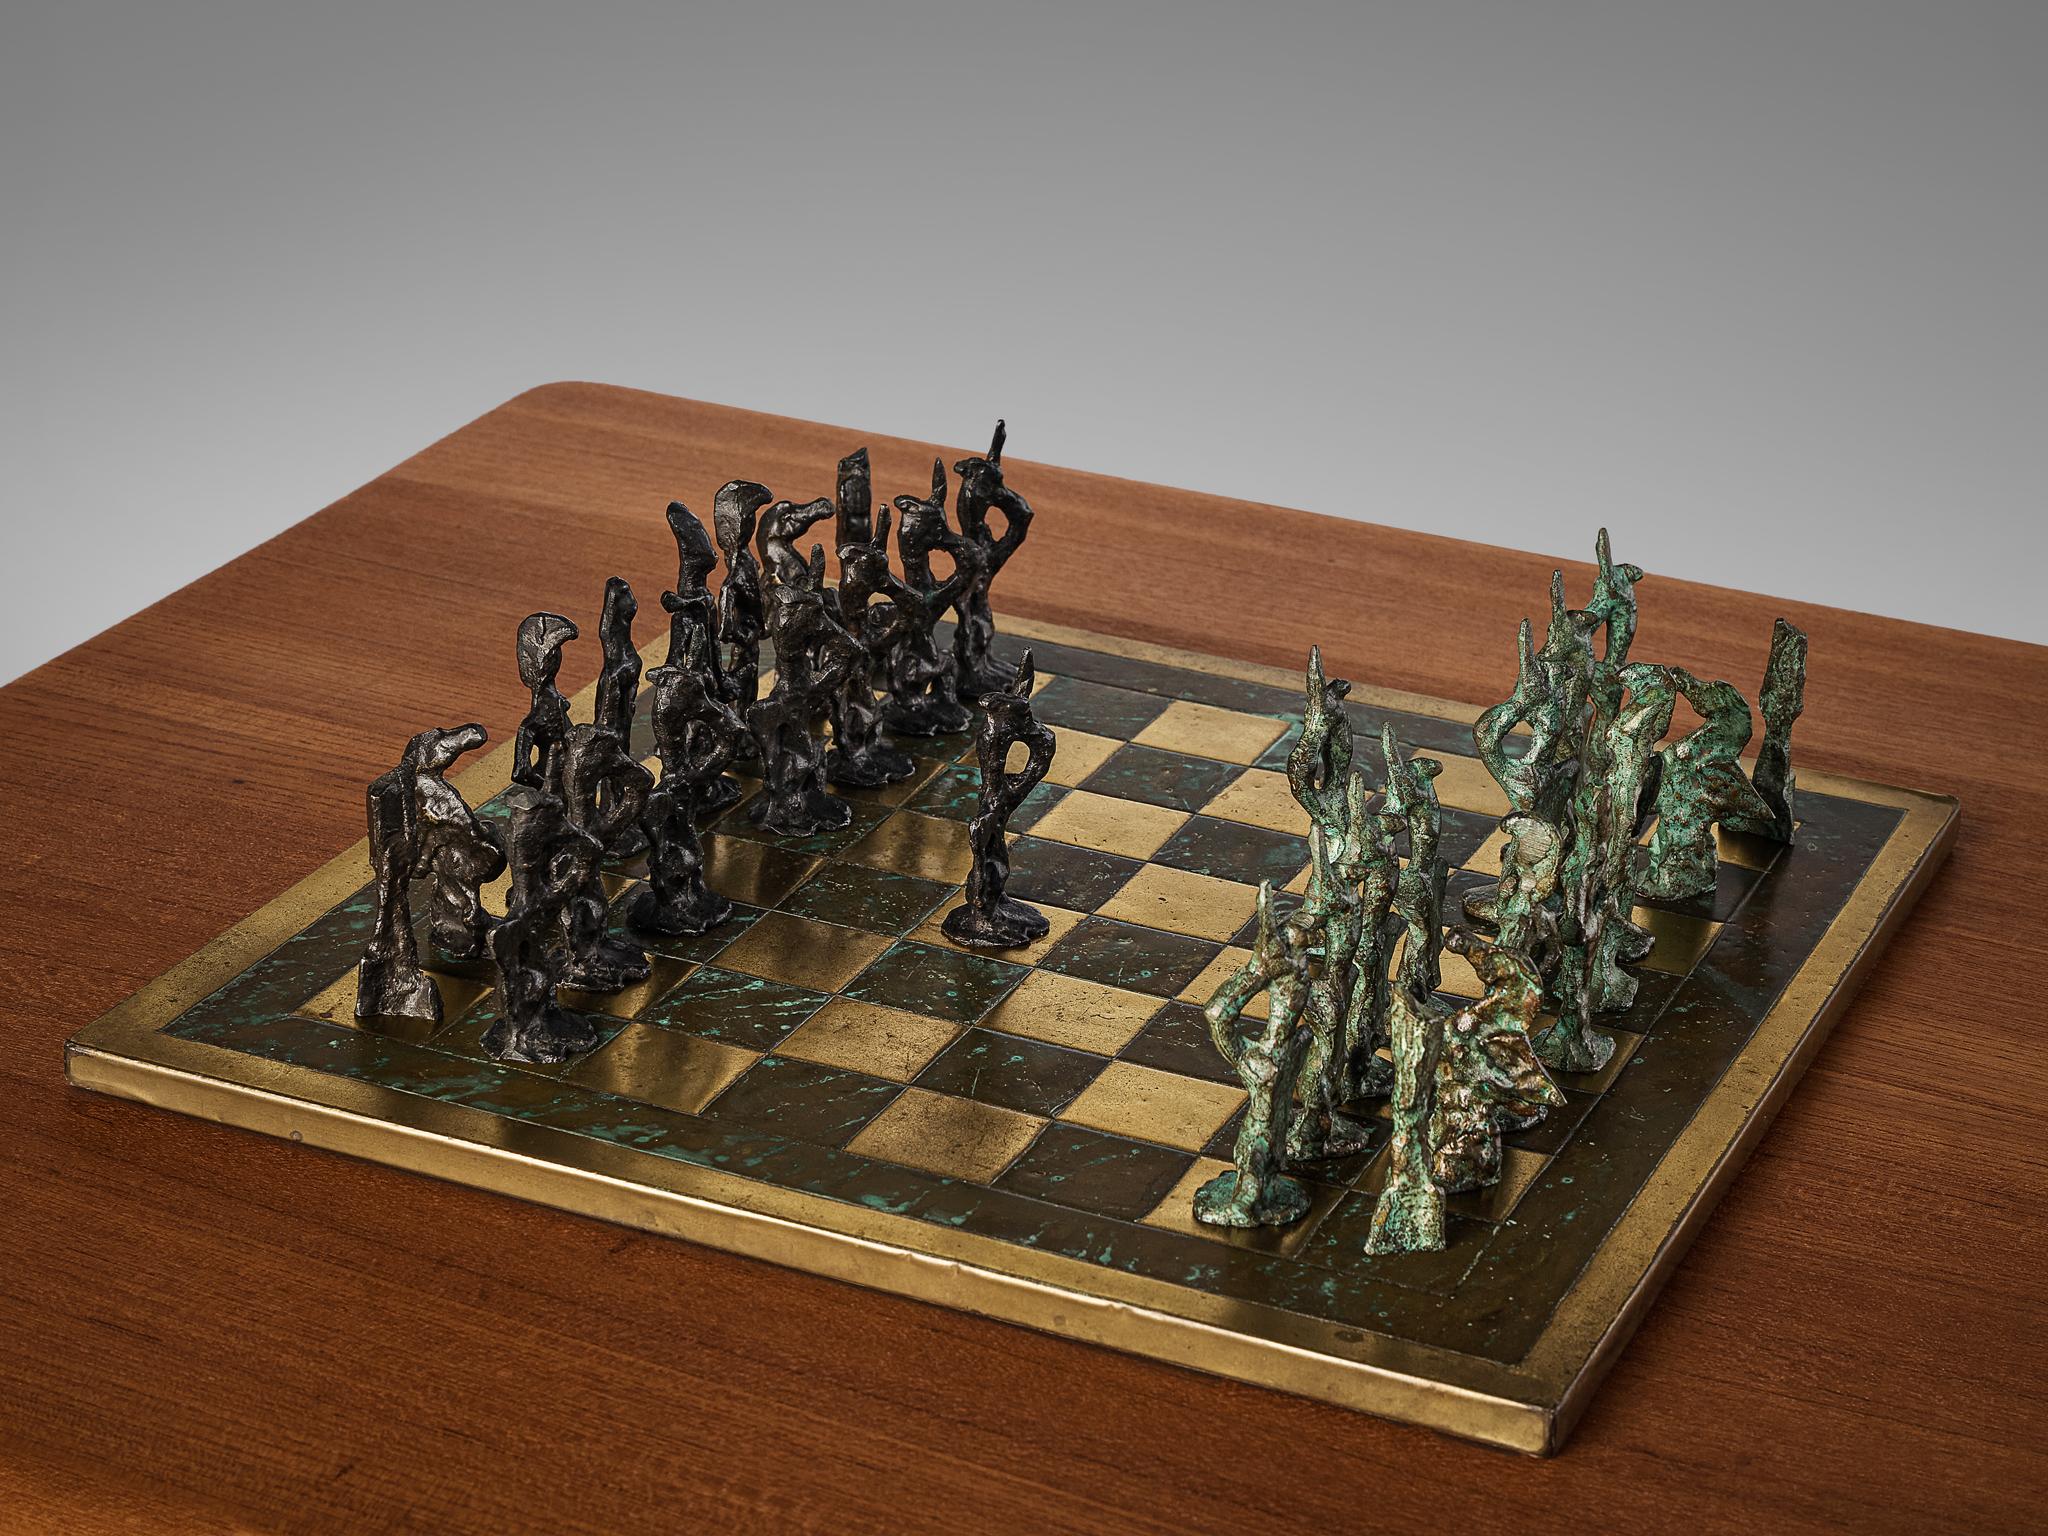 Jeu d'échecs, laiton, bronze, Italie, années 1960

Magnifique jeu d'échecs moderniste réalisé dans le style de l'artiste italien Alberto Giacometti. Le jeu d'échecs exceptionnel a une apparence étonnante. Chaque pièce est coulée en bronze, ce qui la